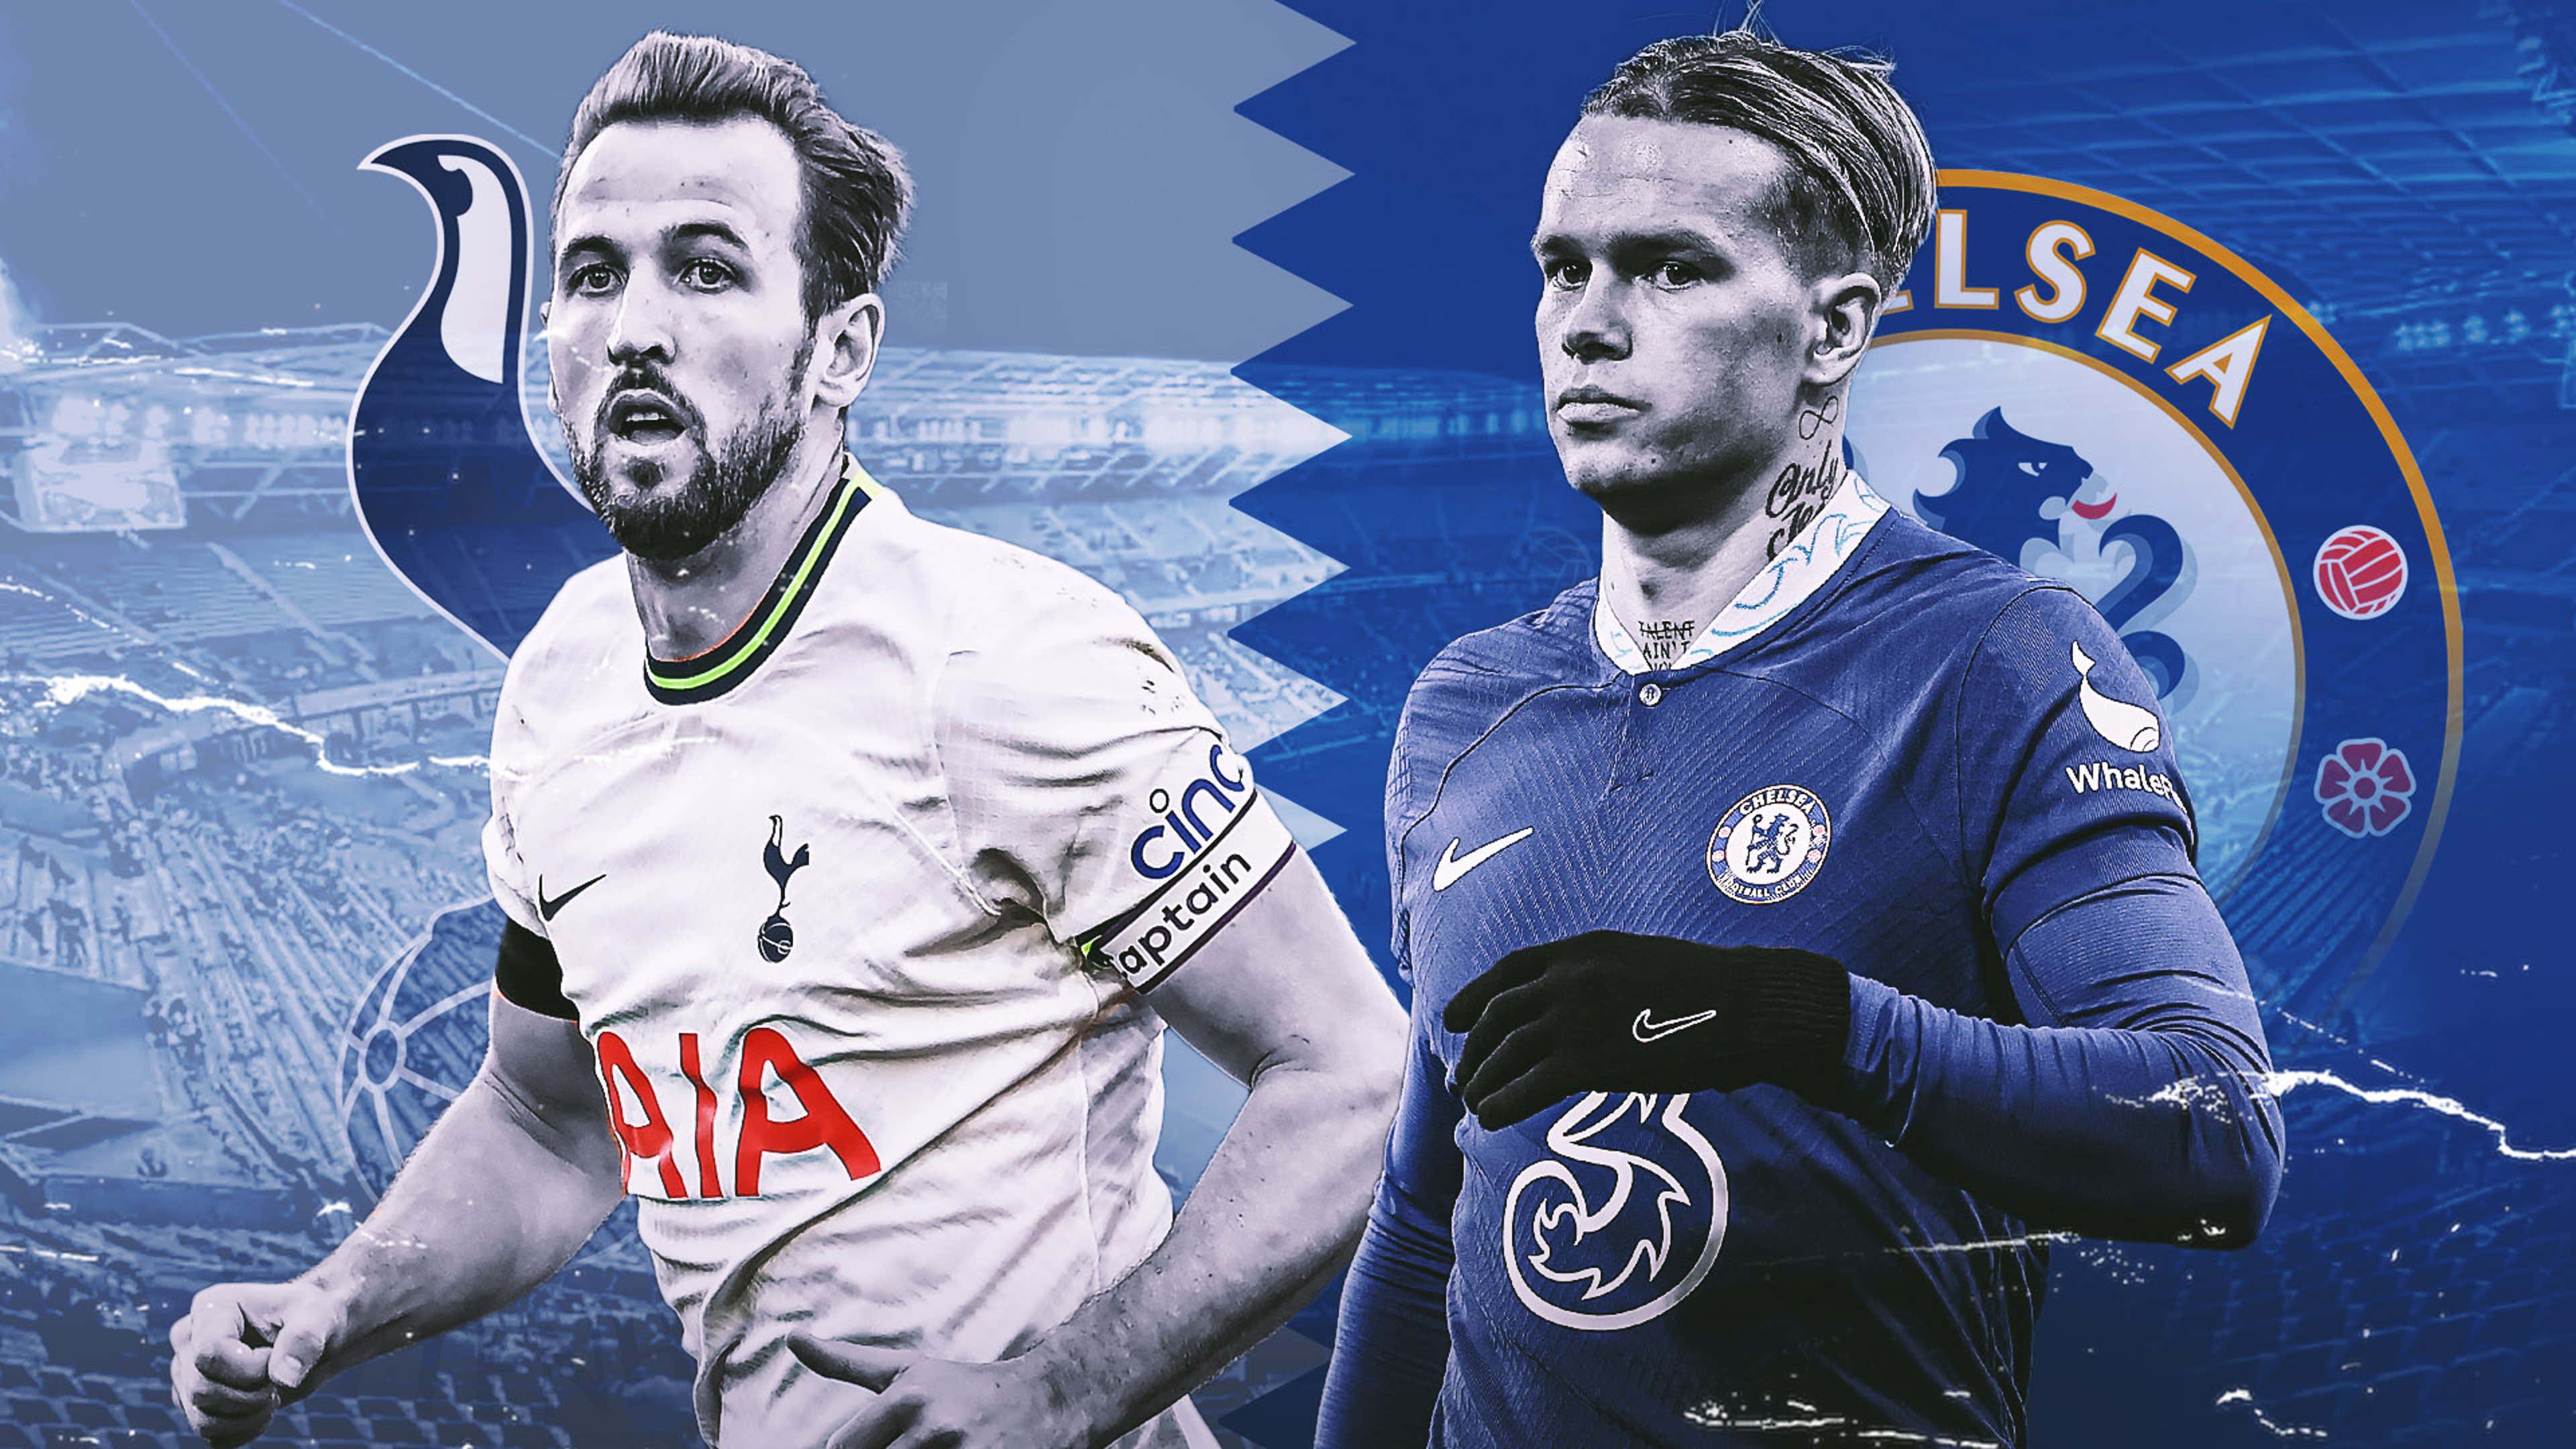 Tottenham Hotspur vs. Chelsea, Premier League: Live blog